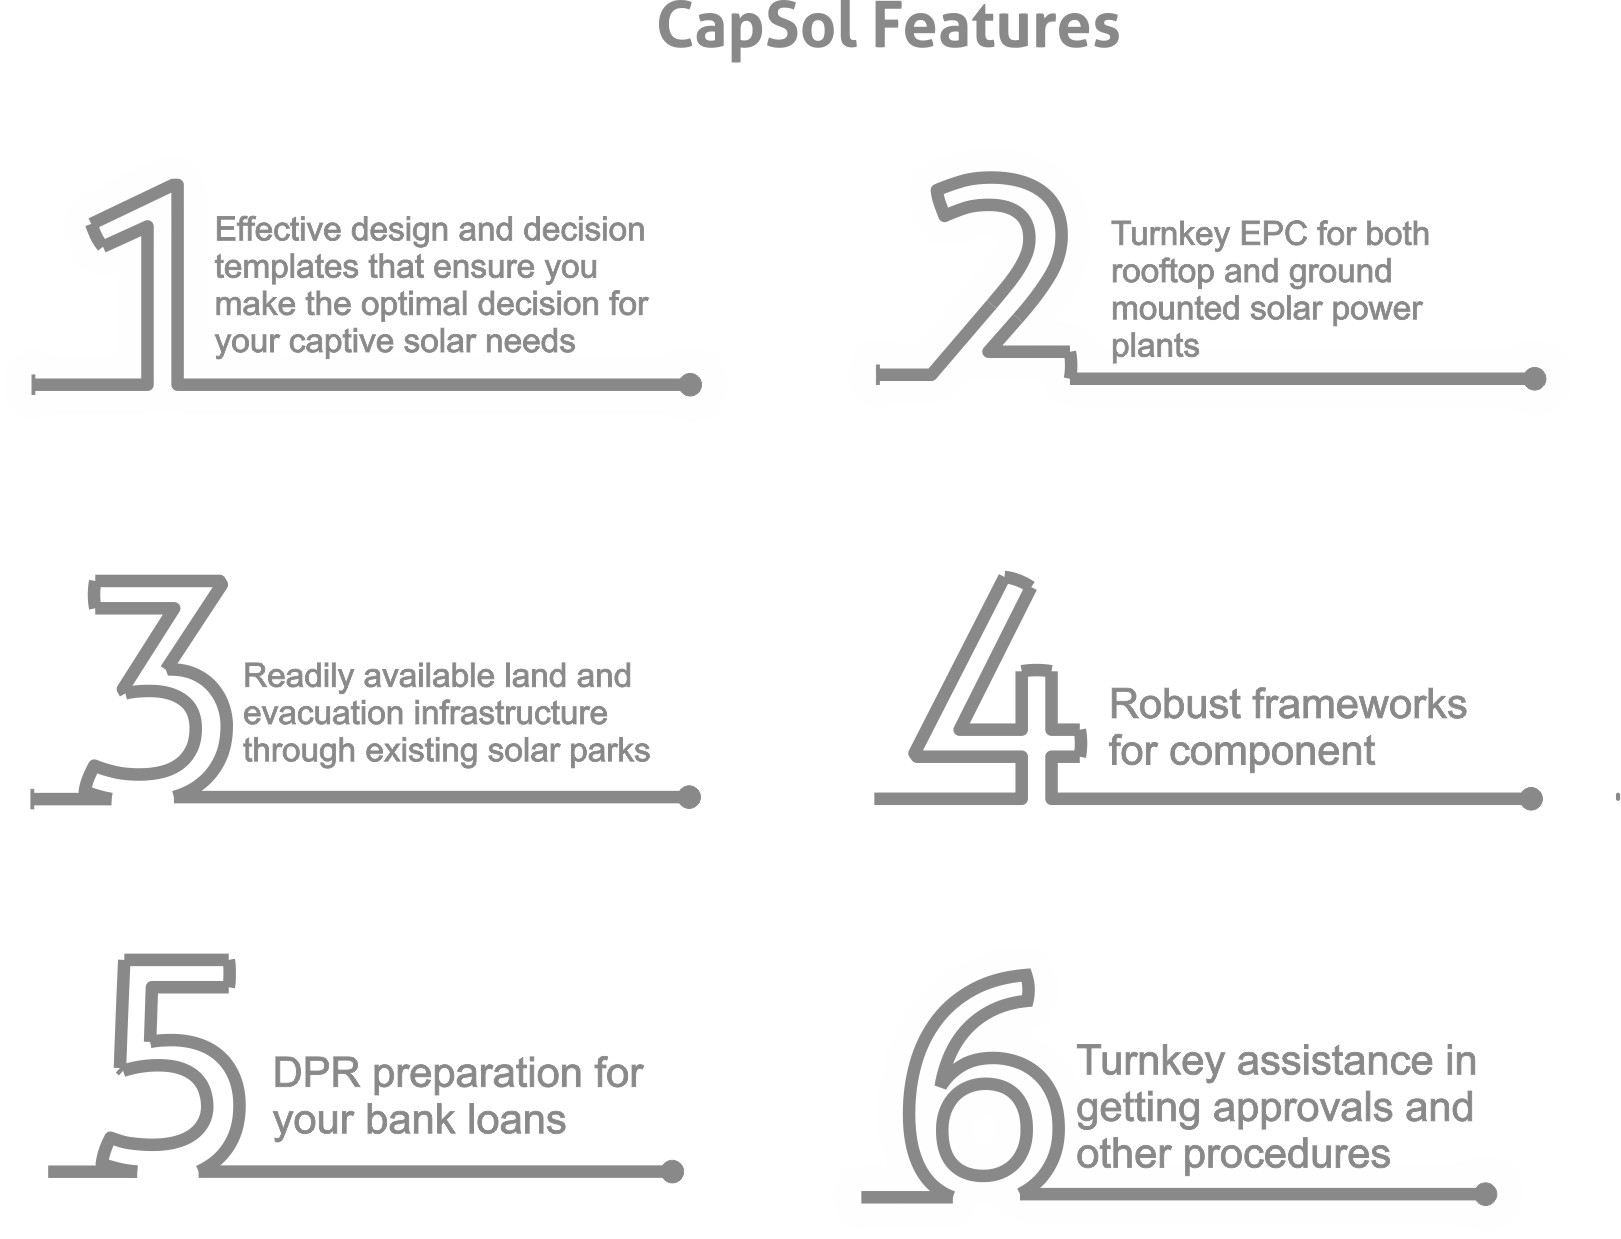 CapSol Features